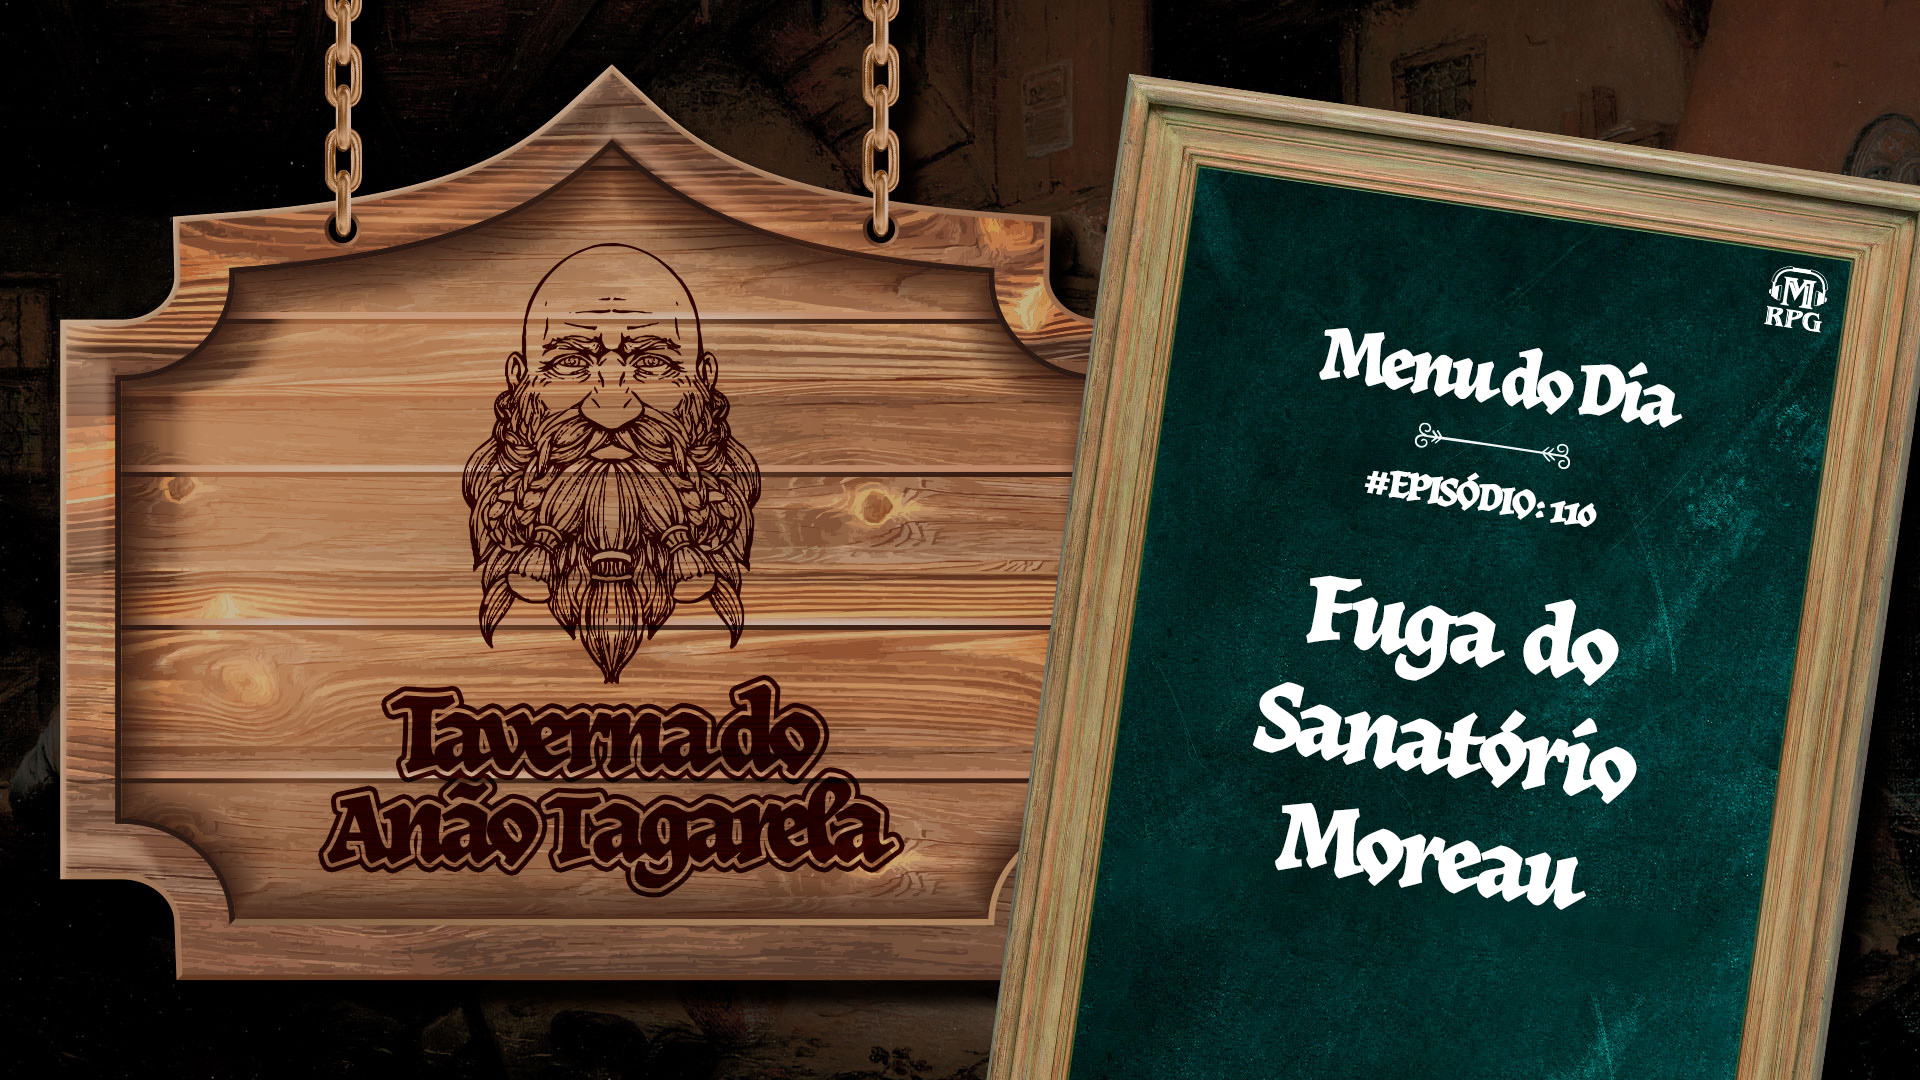 Fuga do Sanatório Moreau – Taverna do Anão Tagarela #110